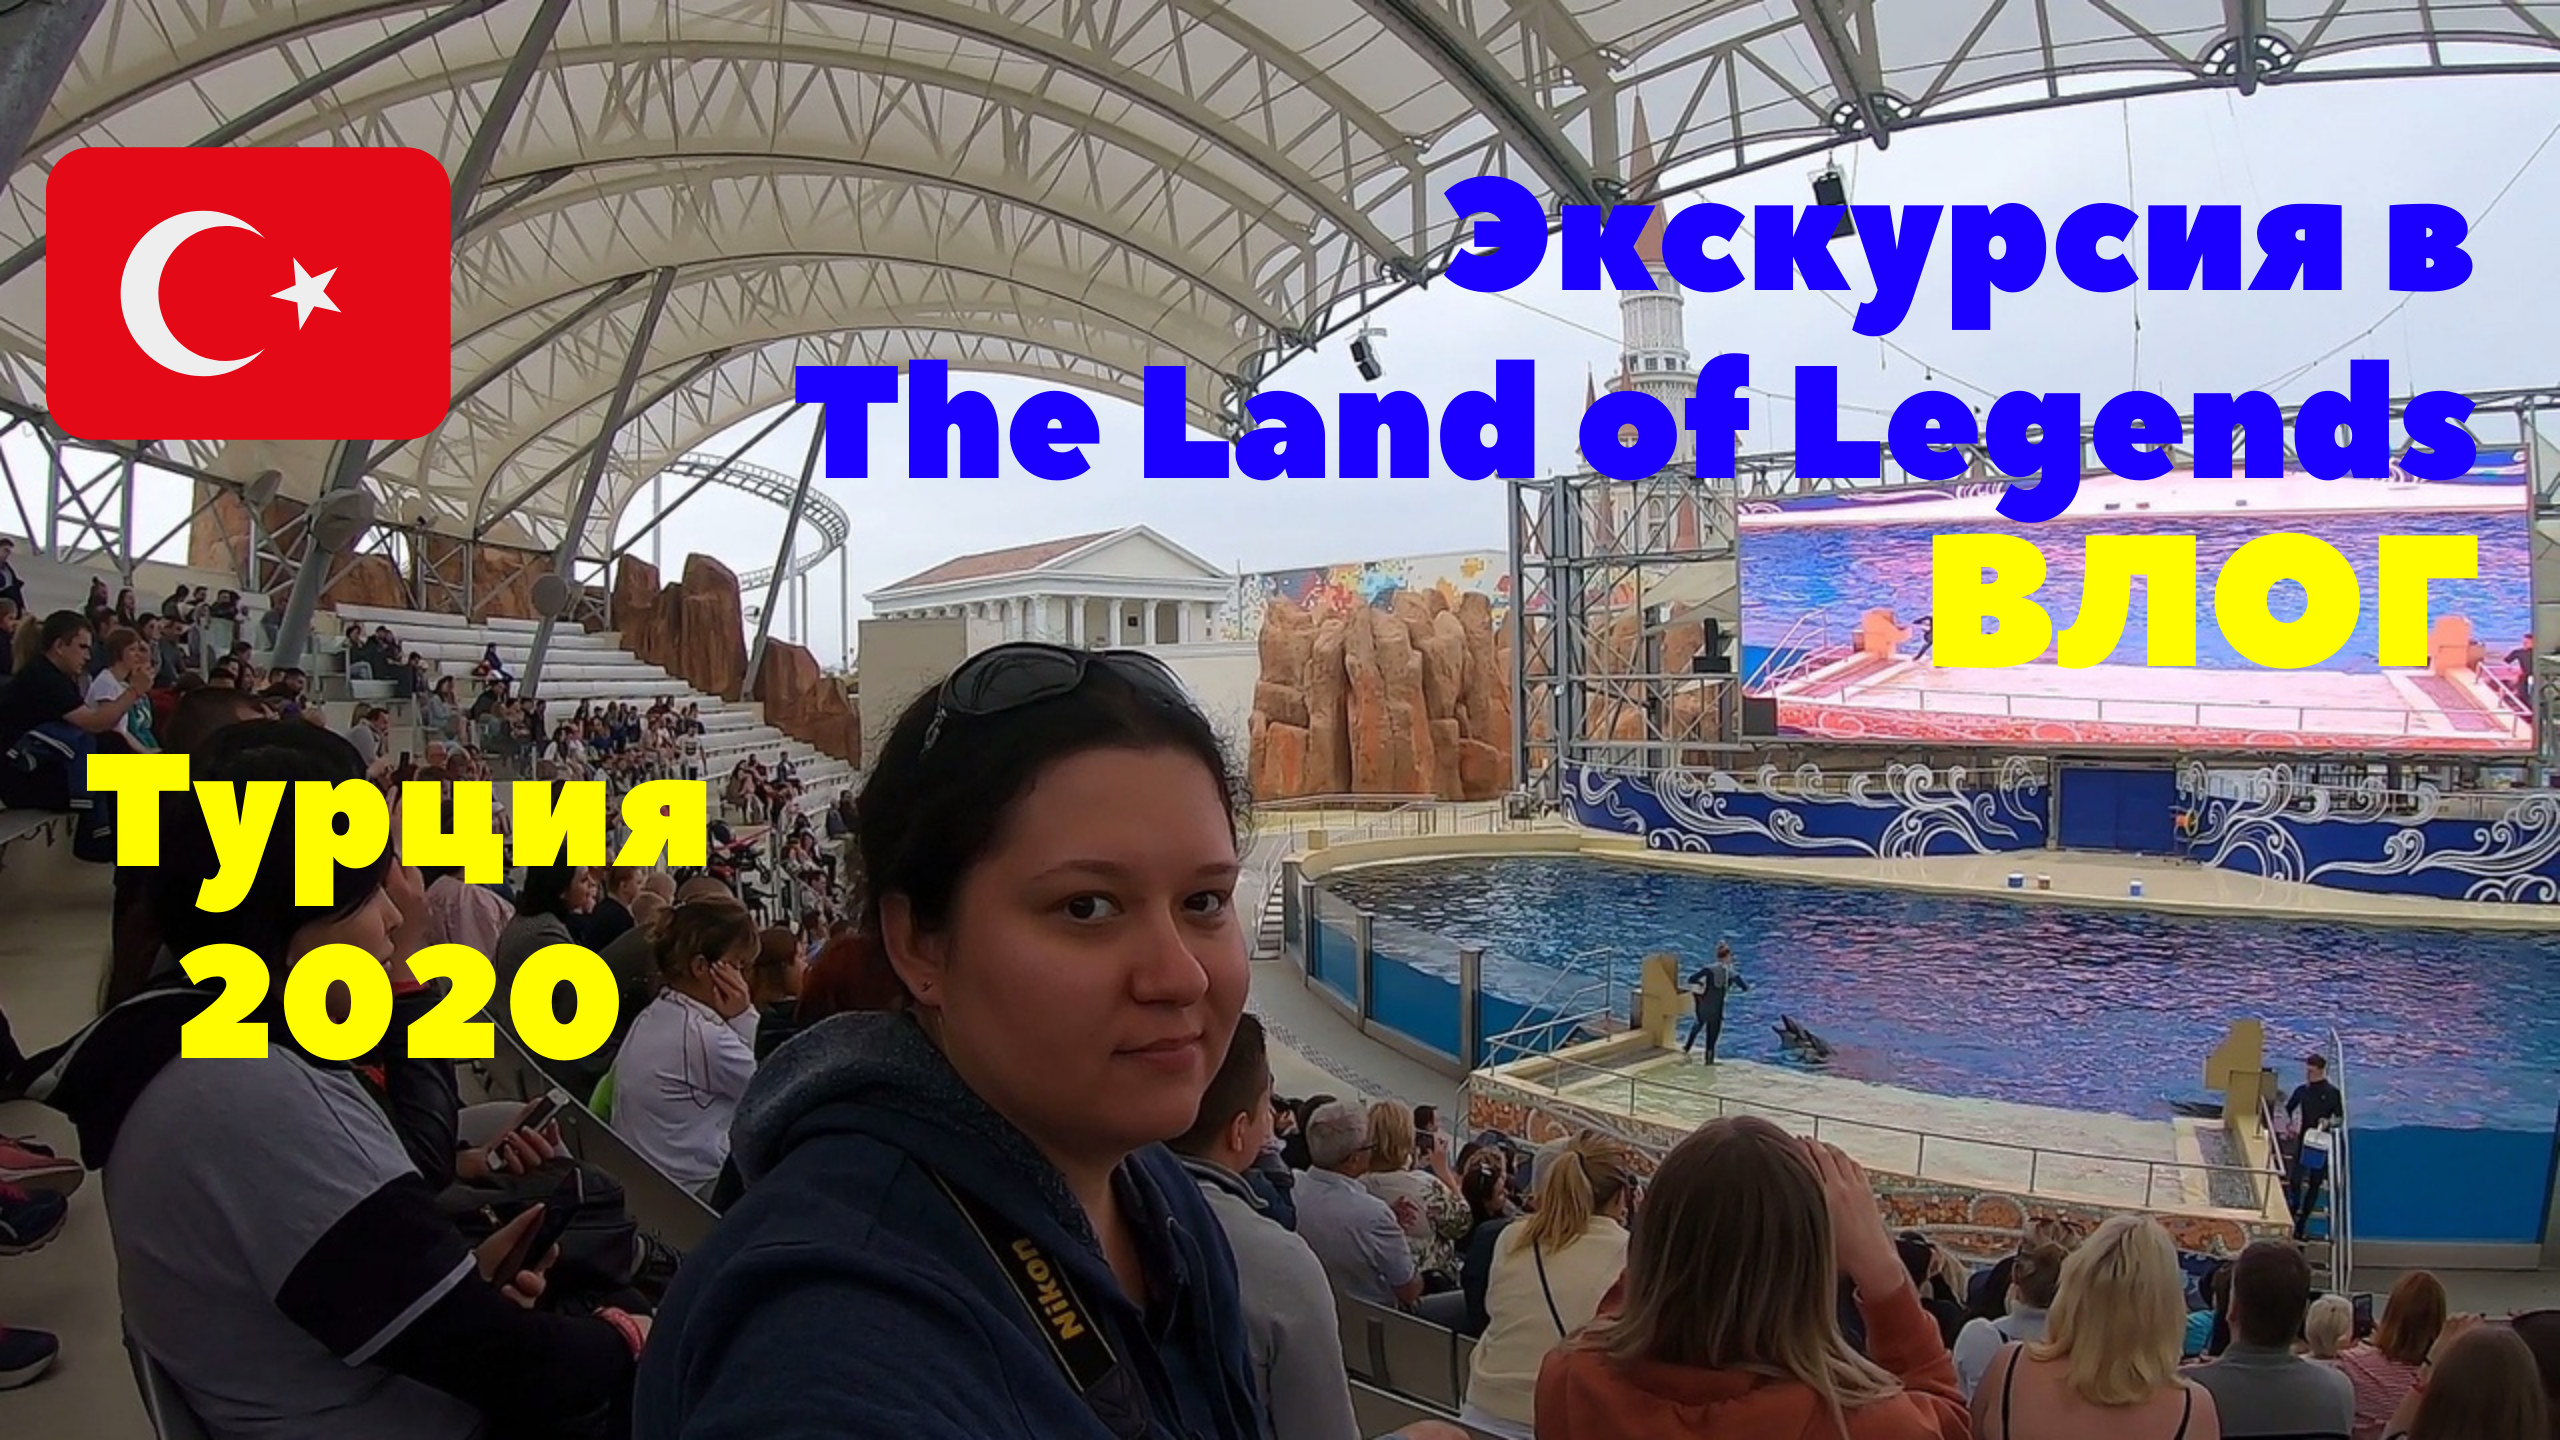 Экскурсия в The Land of Legends. Шоу дельфинов. Влог. Турция 2020